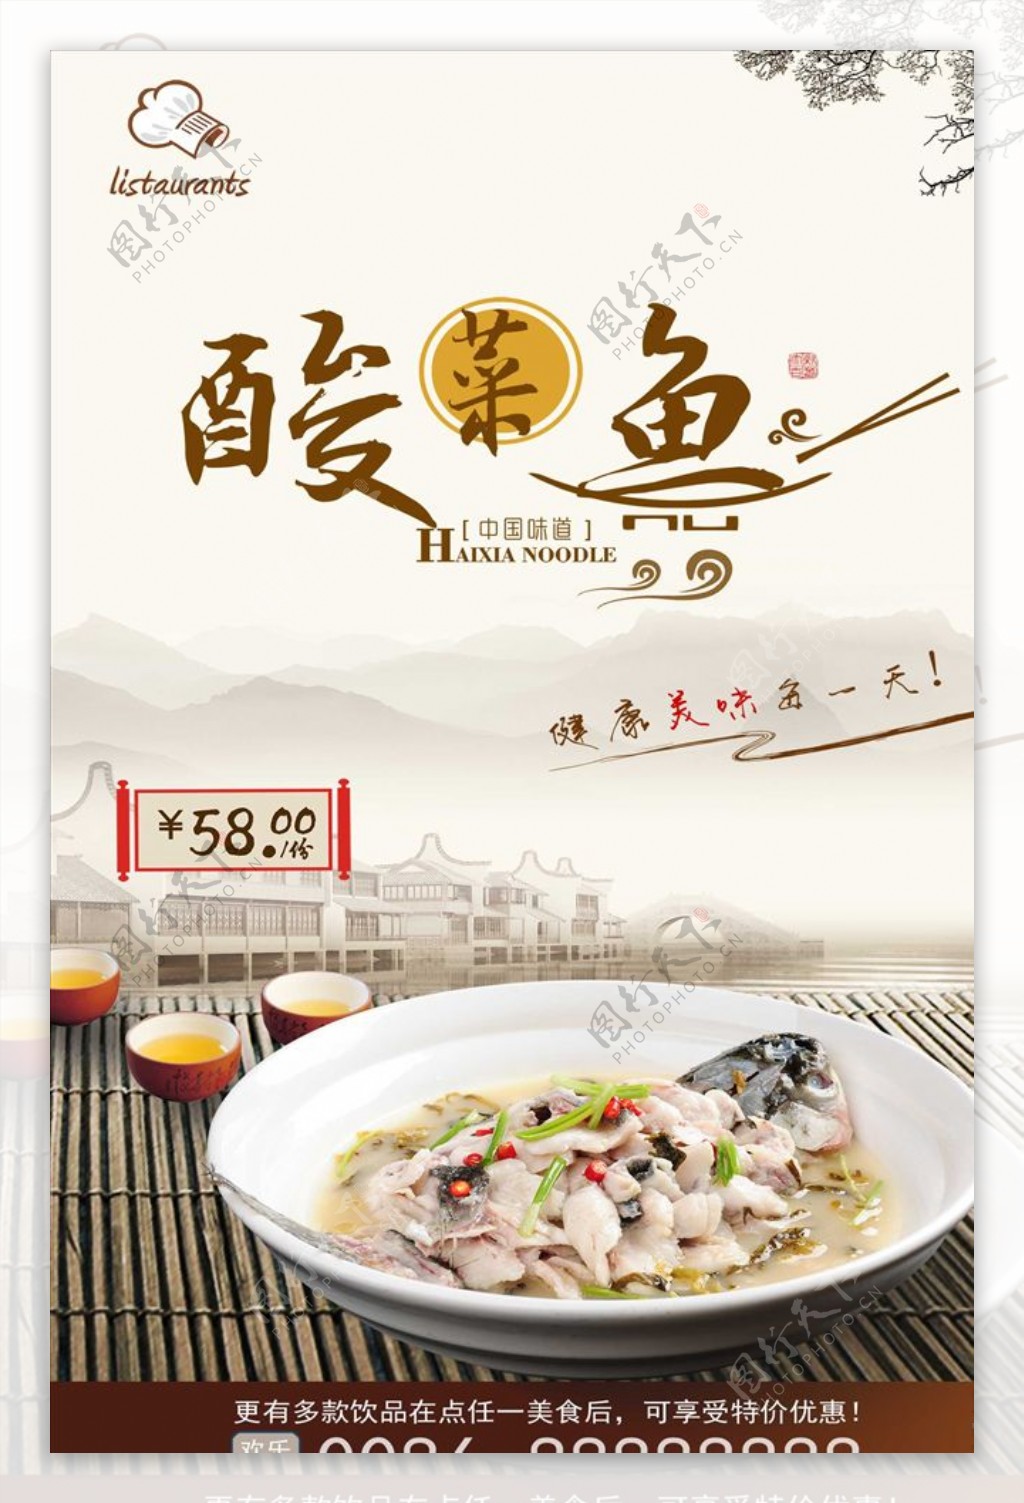 中国风酸菜鱼火锅广告设计海报